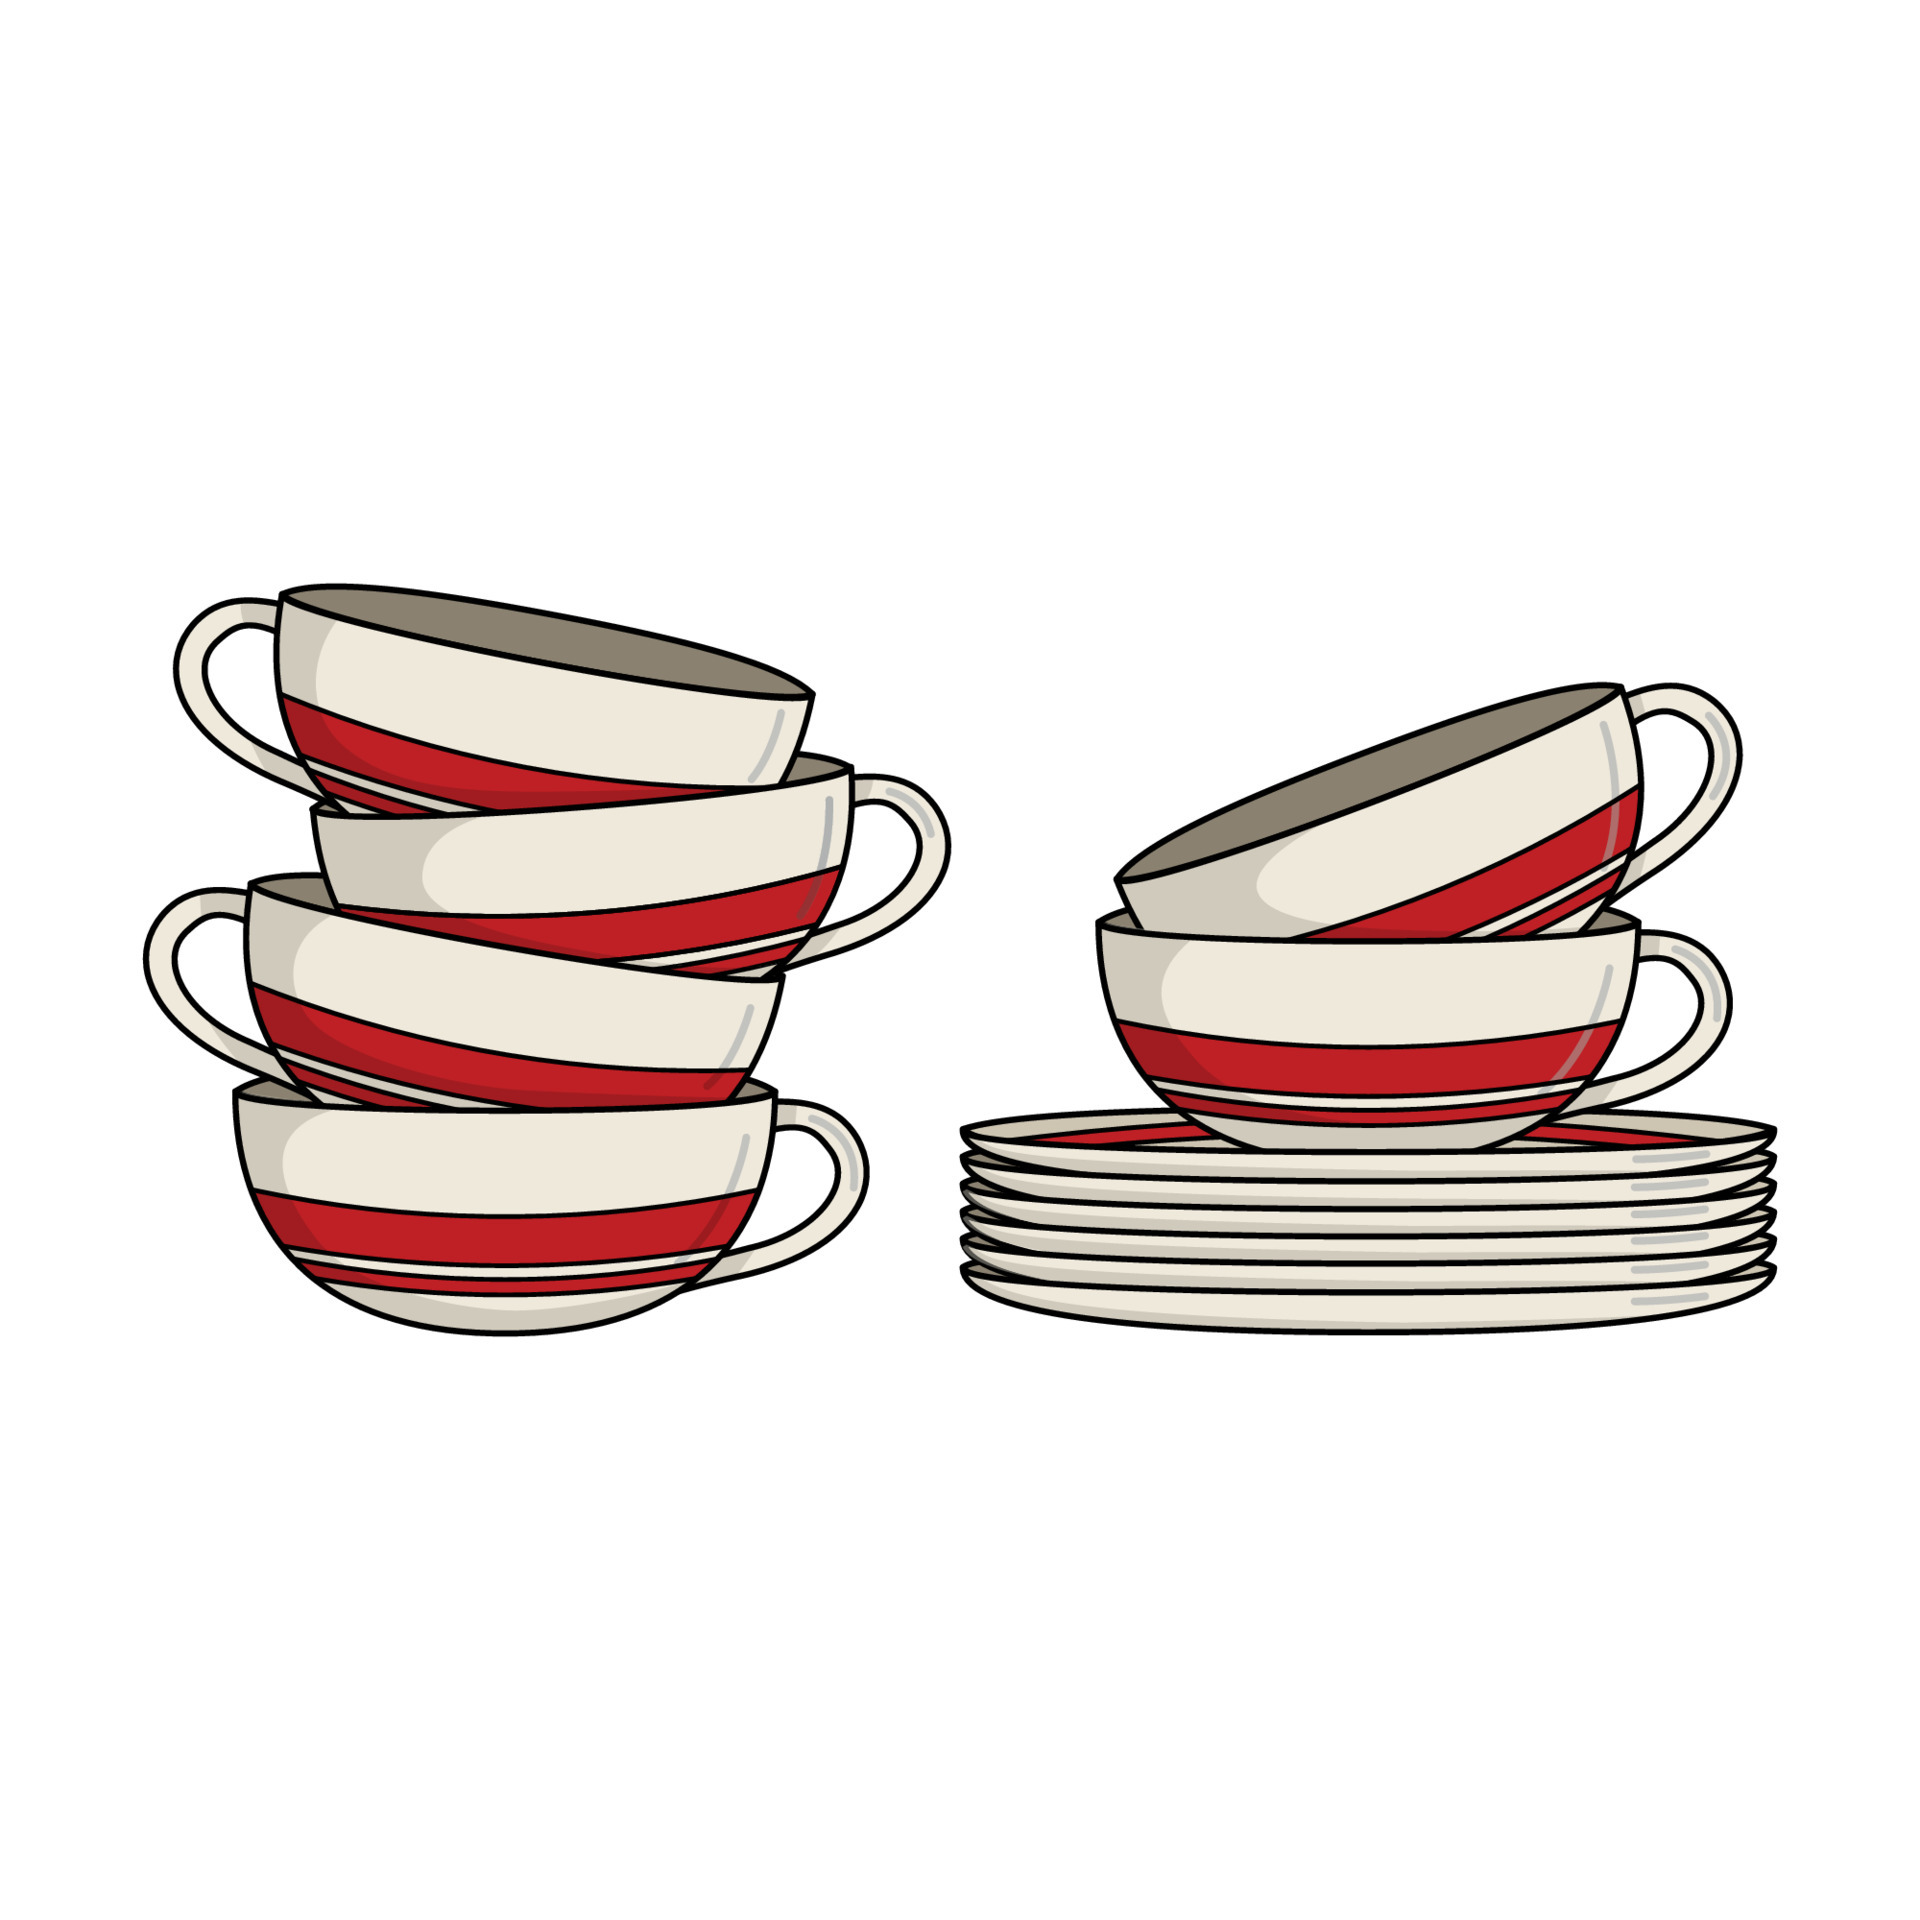 Arena Intensief hooi witte keramische thee- of koffiekopjes met borden en rode streep 4850108 -  Download Free Vectors, Vector Bestanden, Ontwerpen Templates